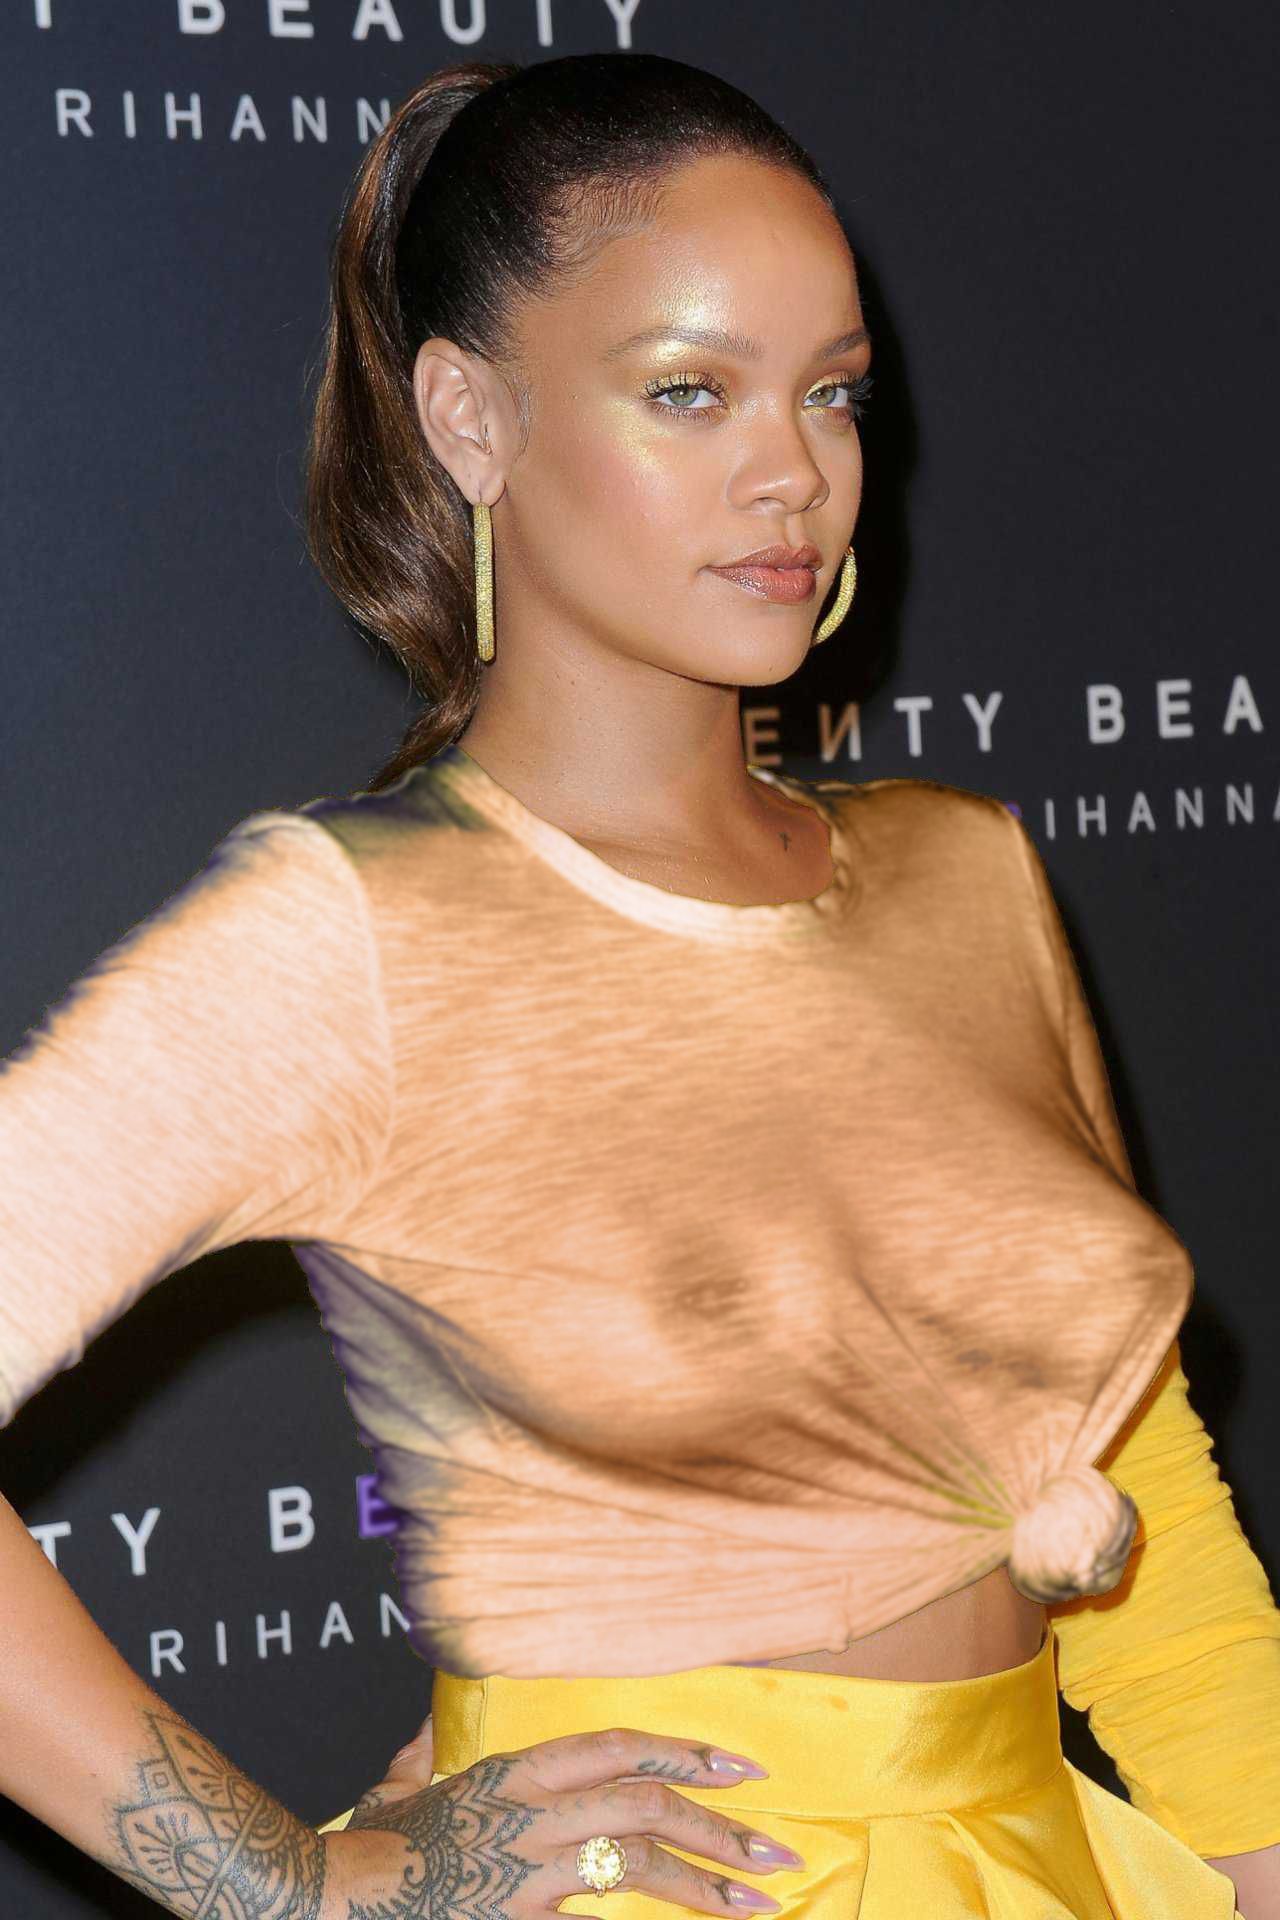 Rihanna-Braless-114-thefappeningblog.com_.jpg